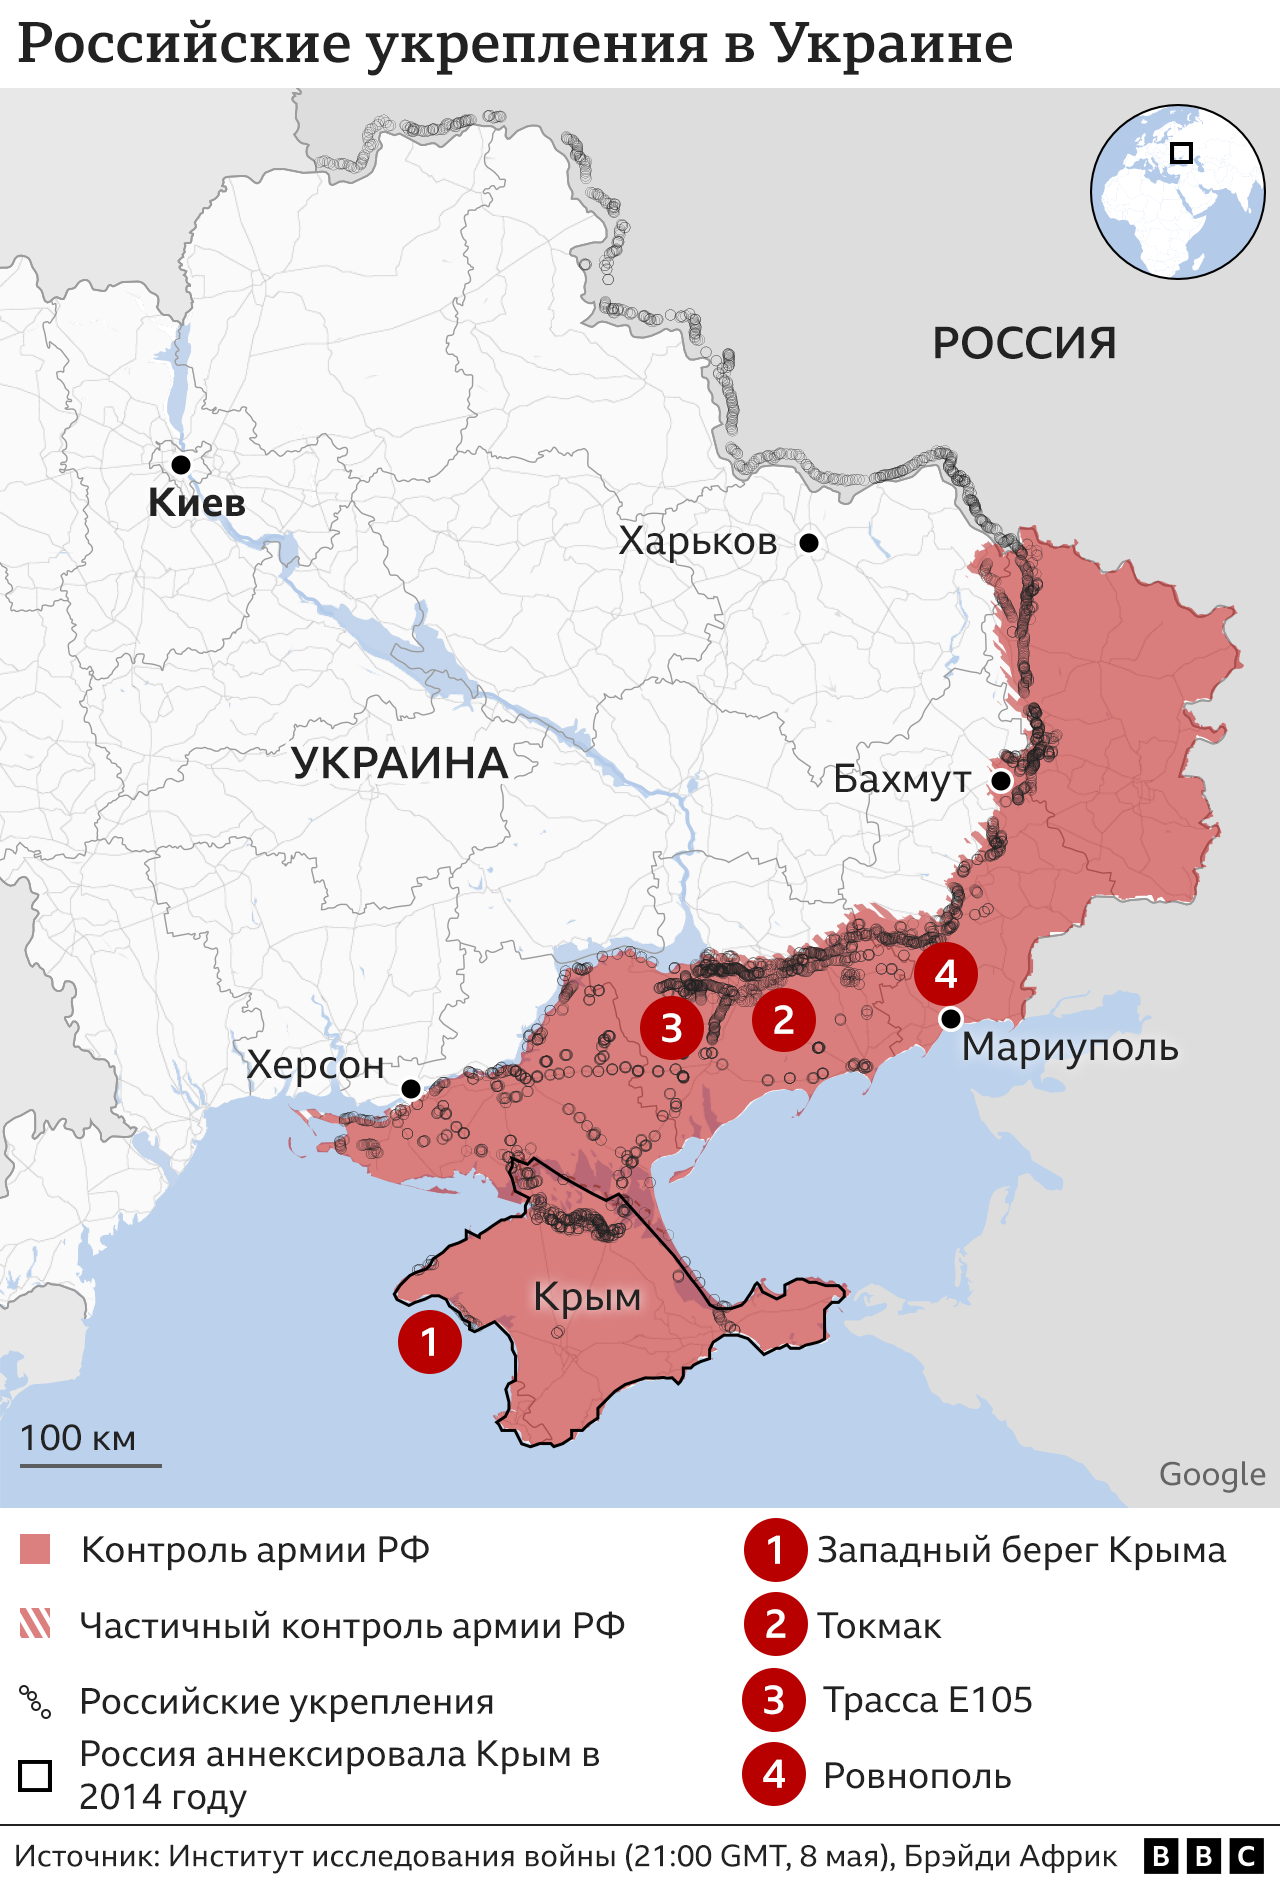 Карта, показывающая контролируемые Россией районы Украины с густой сетью траншей, отмеченных вдоль линии фронта и в глубине юга Украины.